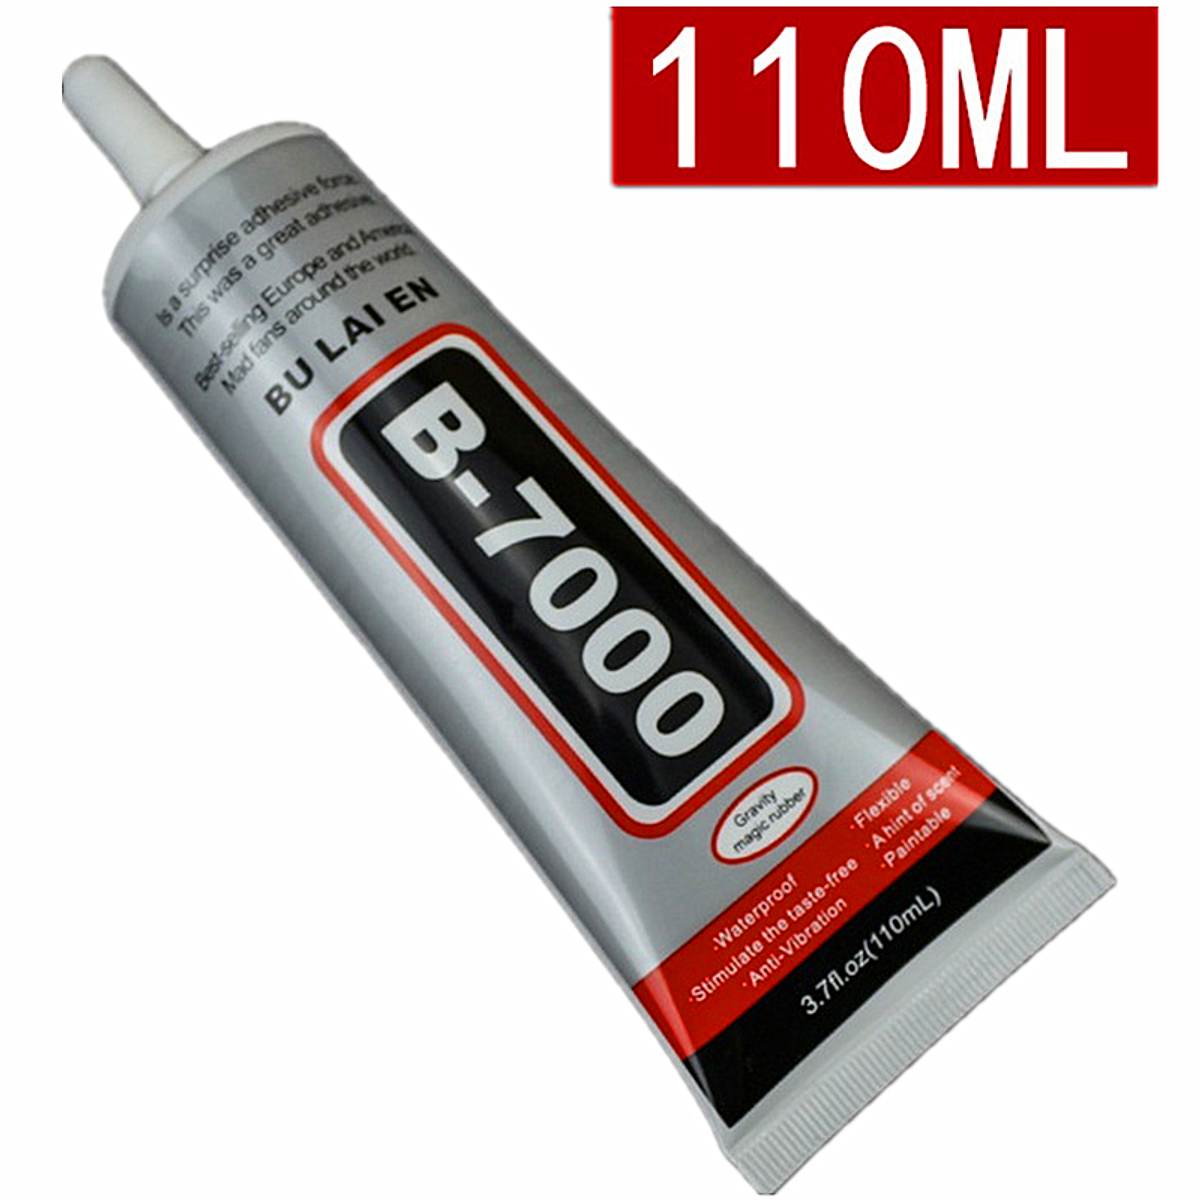 B-7000 Pegamento para reemplazo/reparación de LCD, Cristal y chasis - 15 ml  - Spain